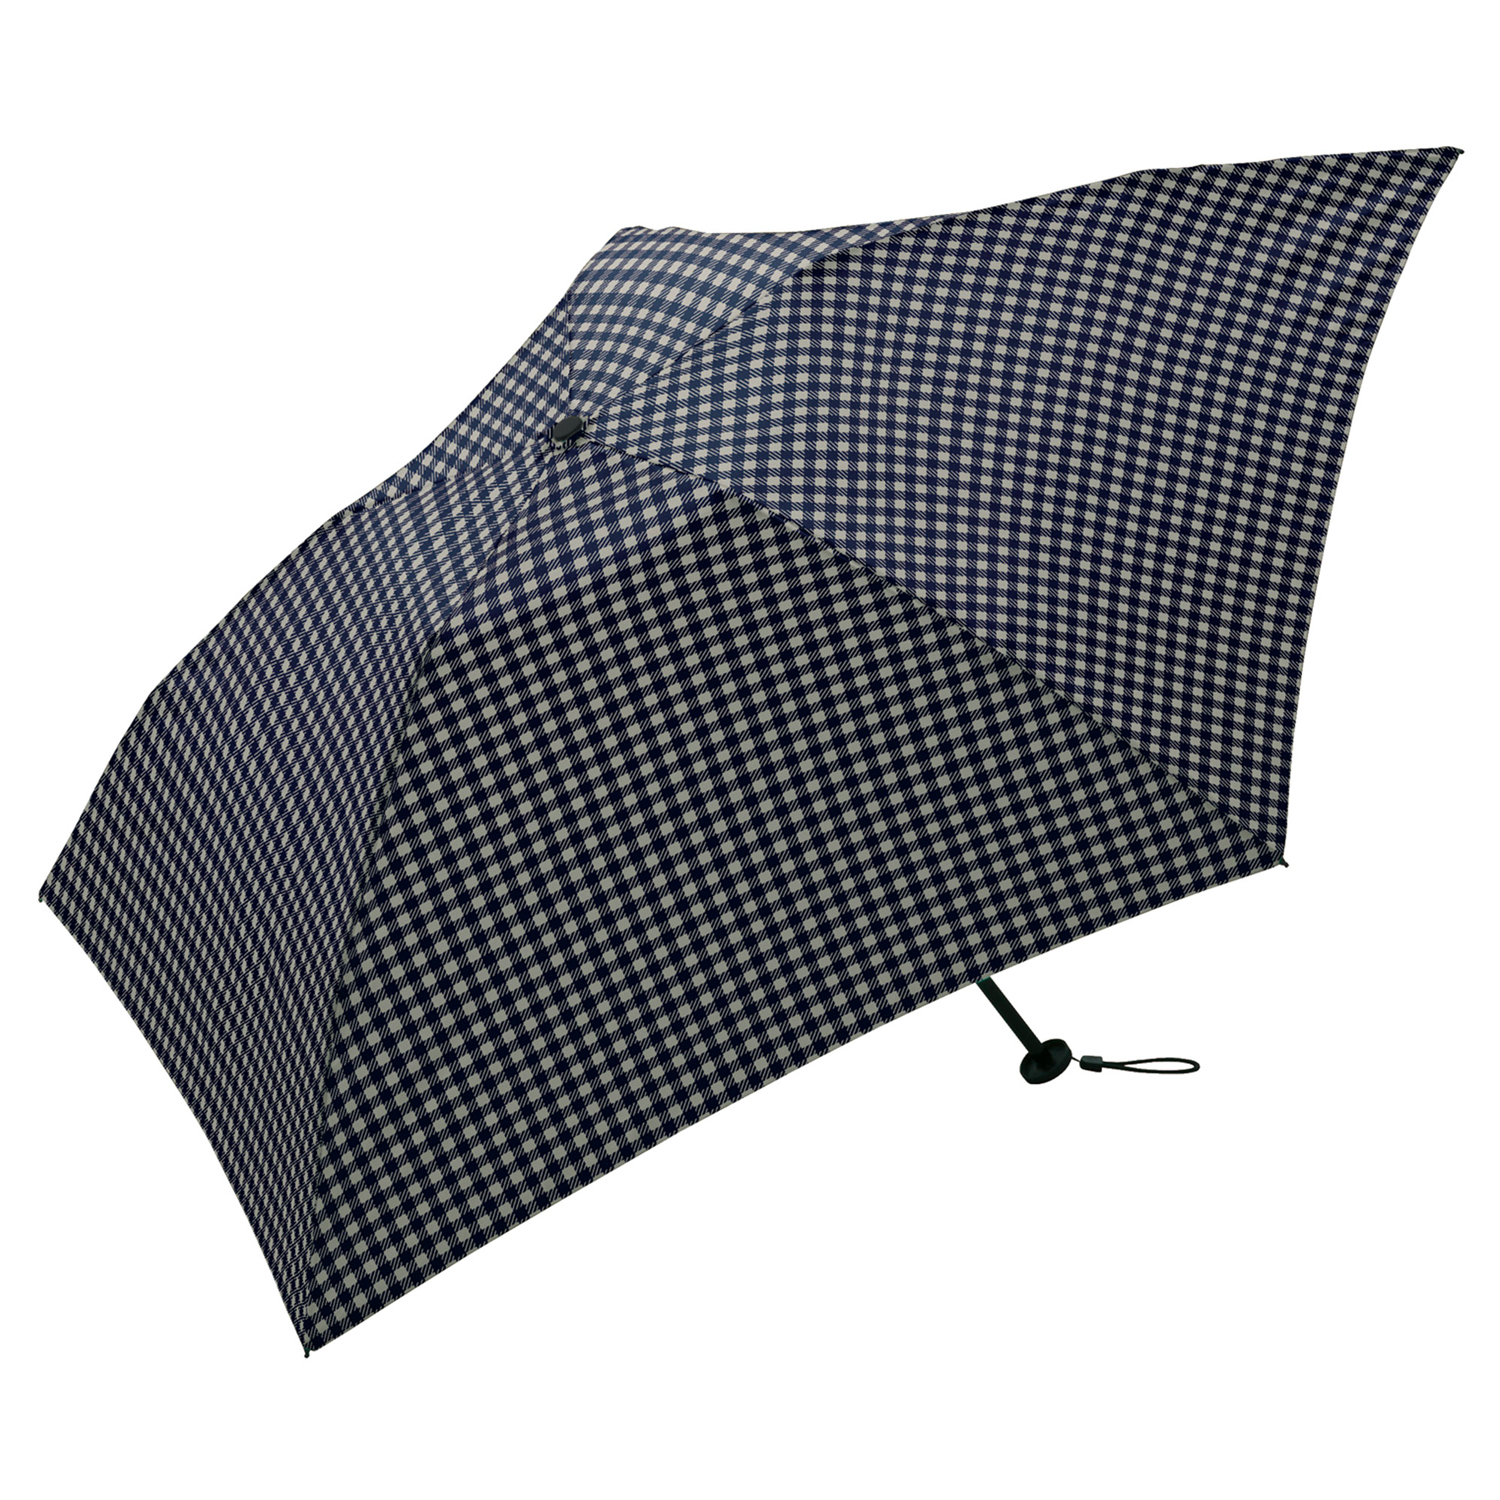 Gingham check - Umbrella Air-light (K34-121)